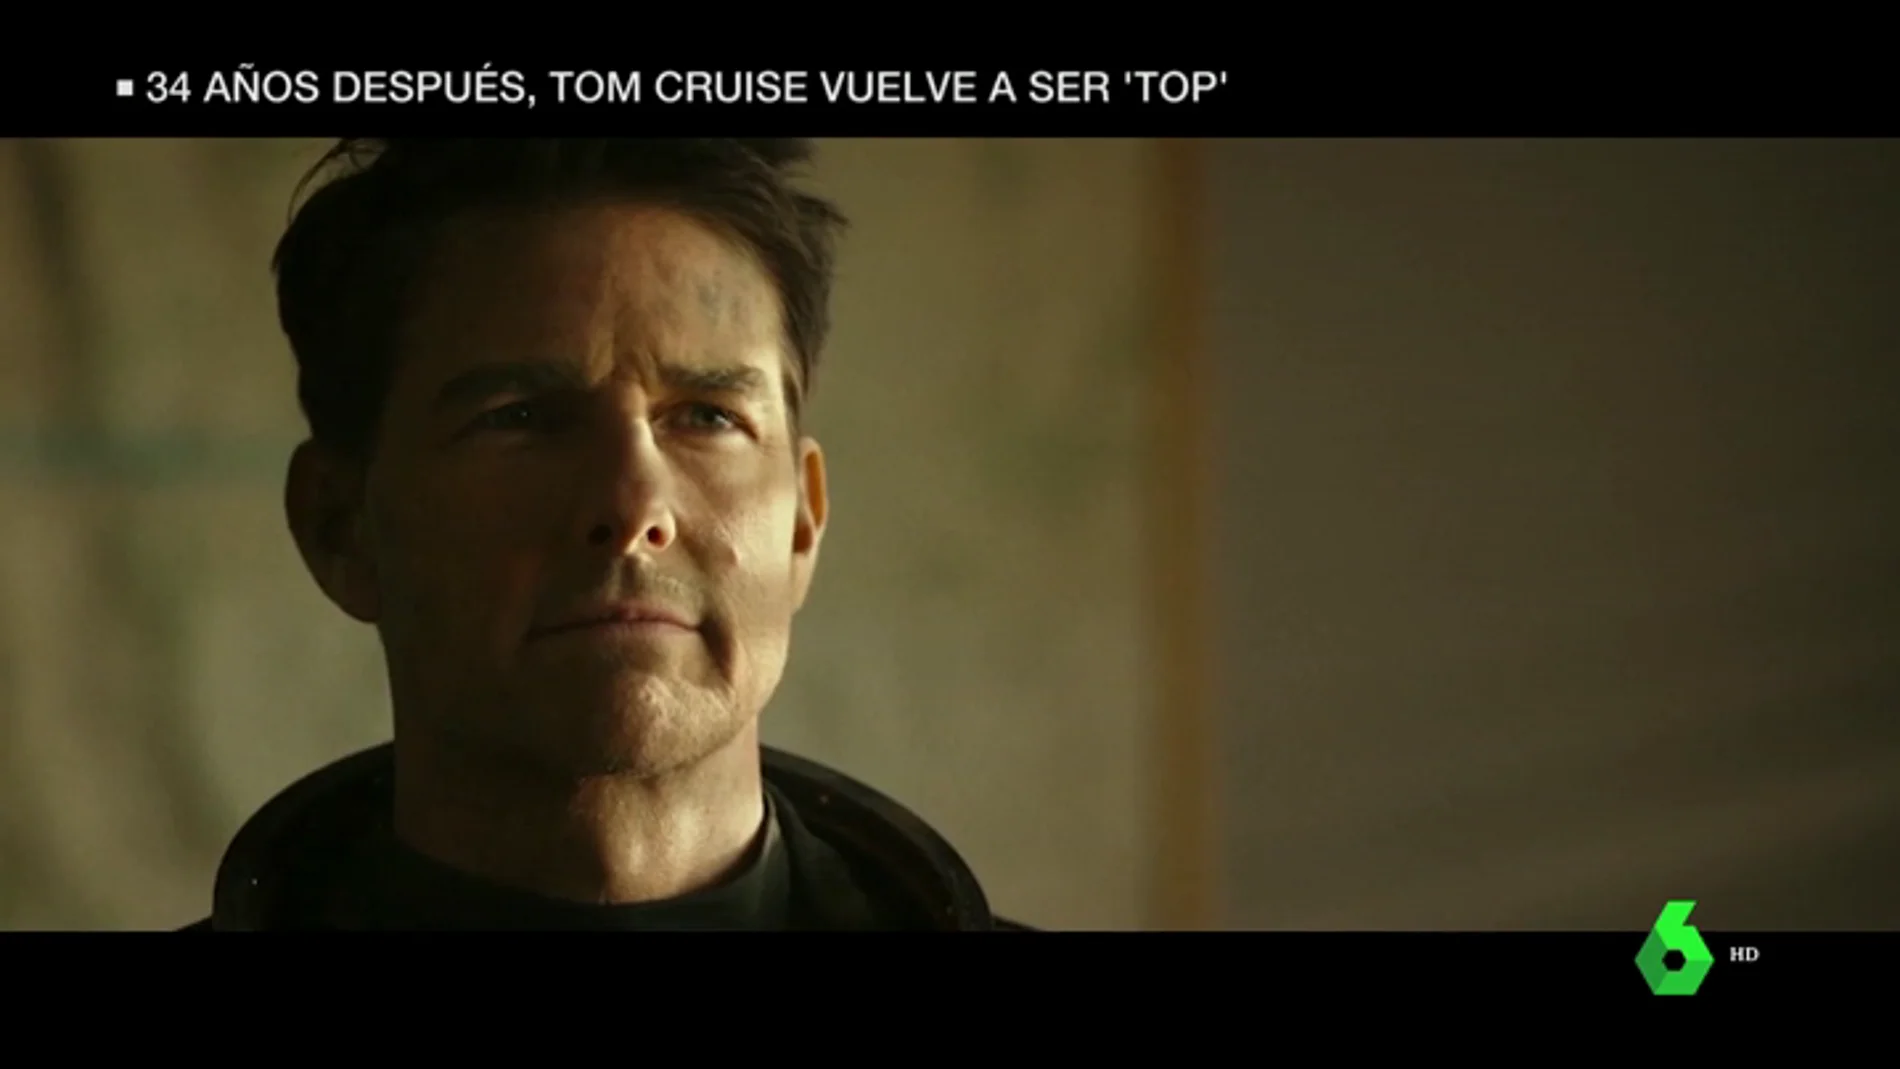 Tom Cruise vuelve a su papel como Maverick en 'Top Gun'